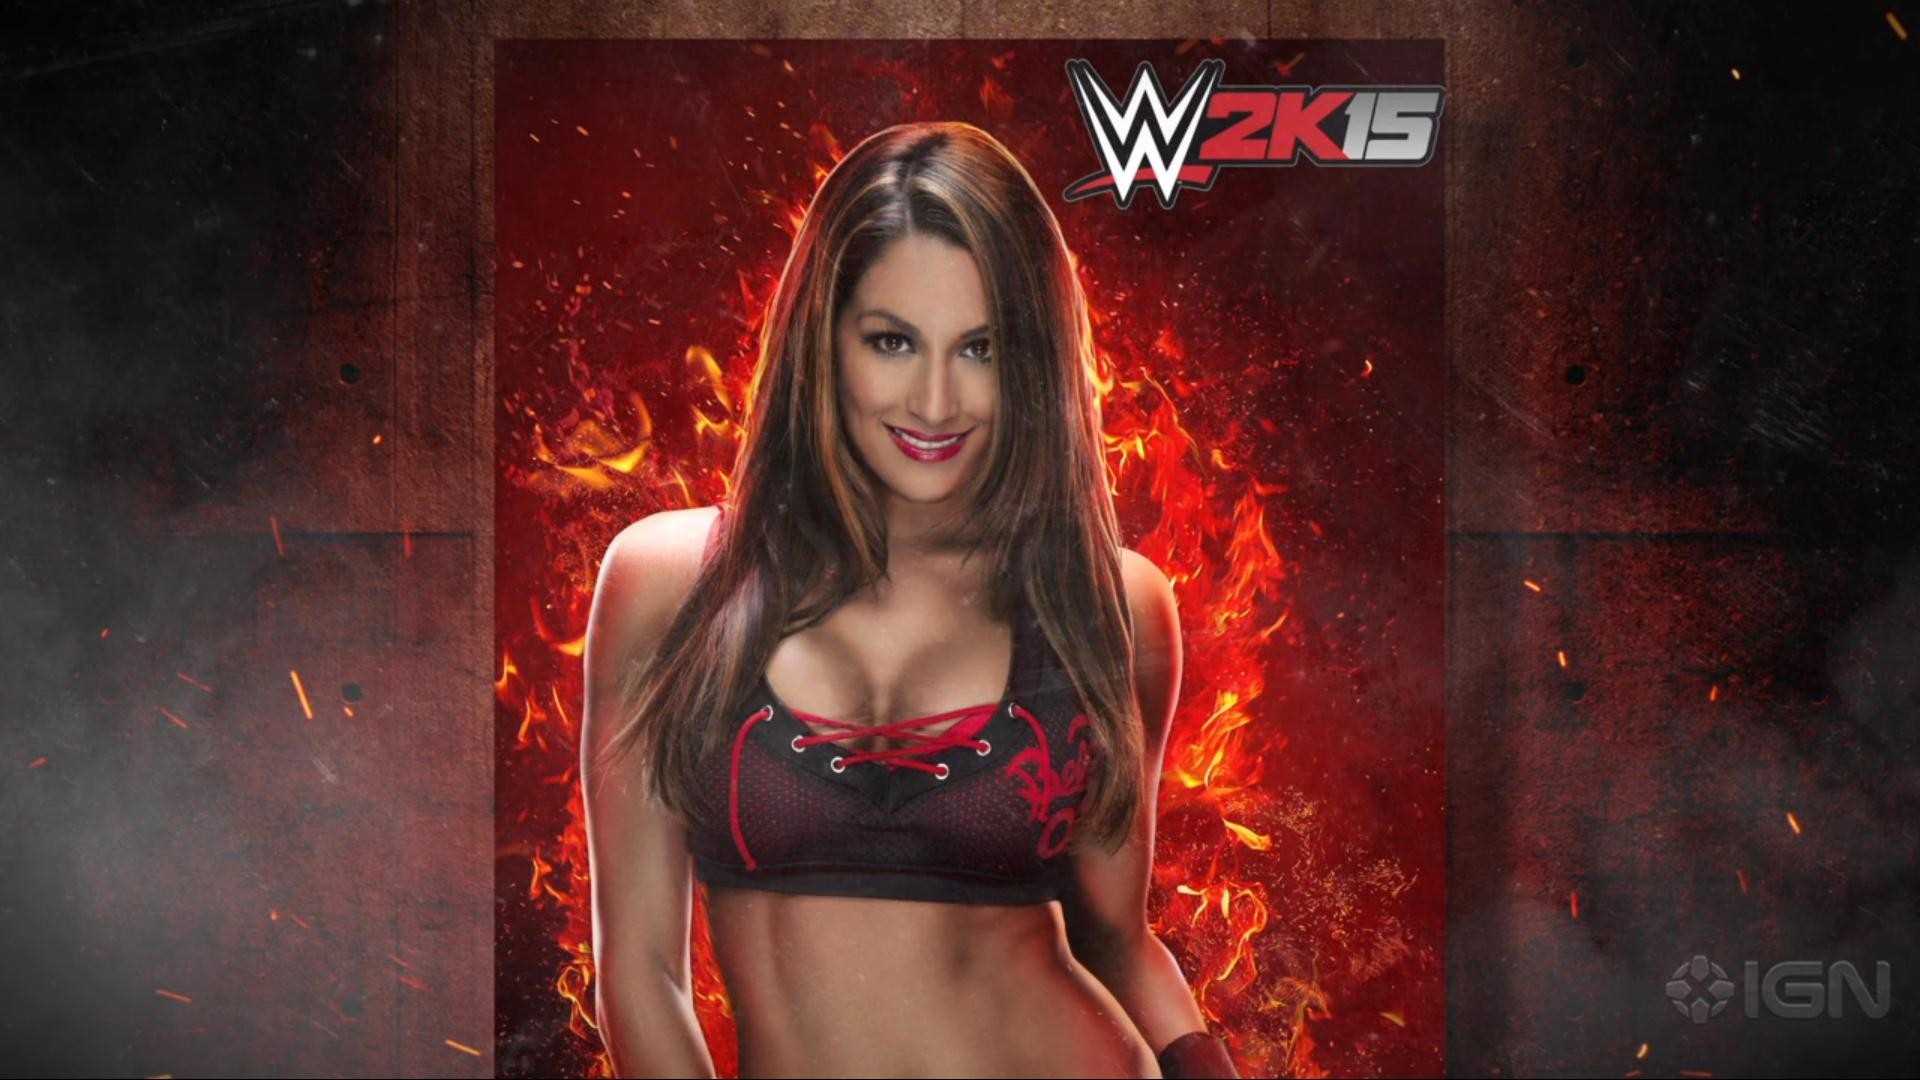 WWE Nikki Bella HD Wallpaper For Desktop Of WWE Women